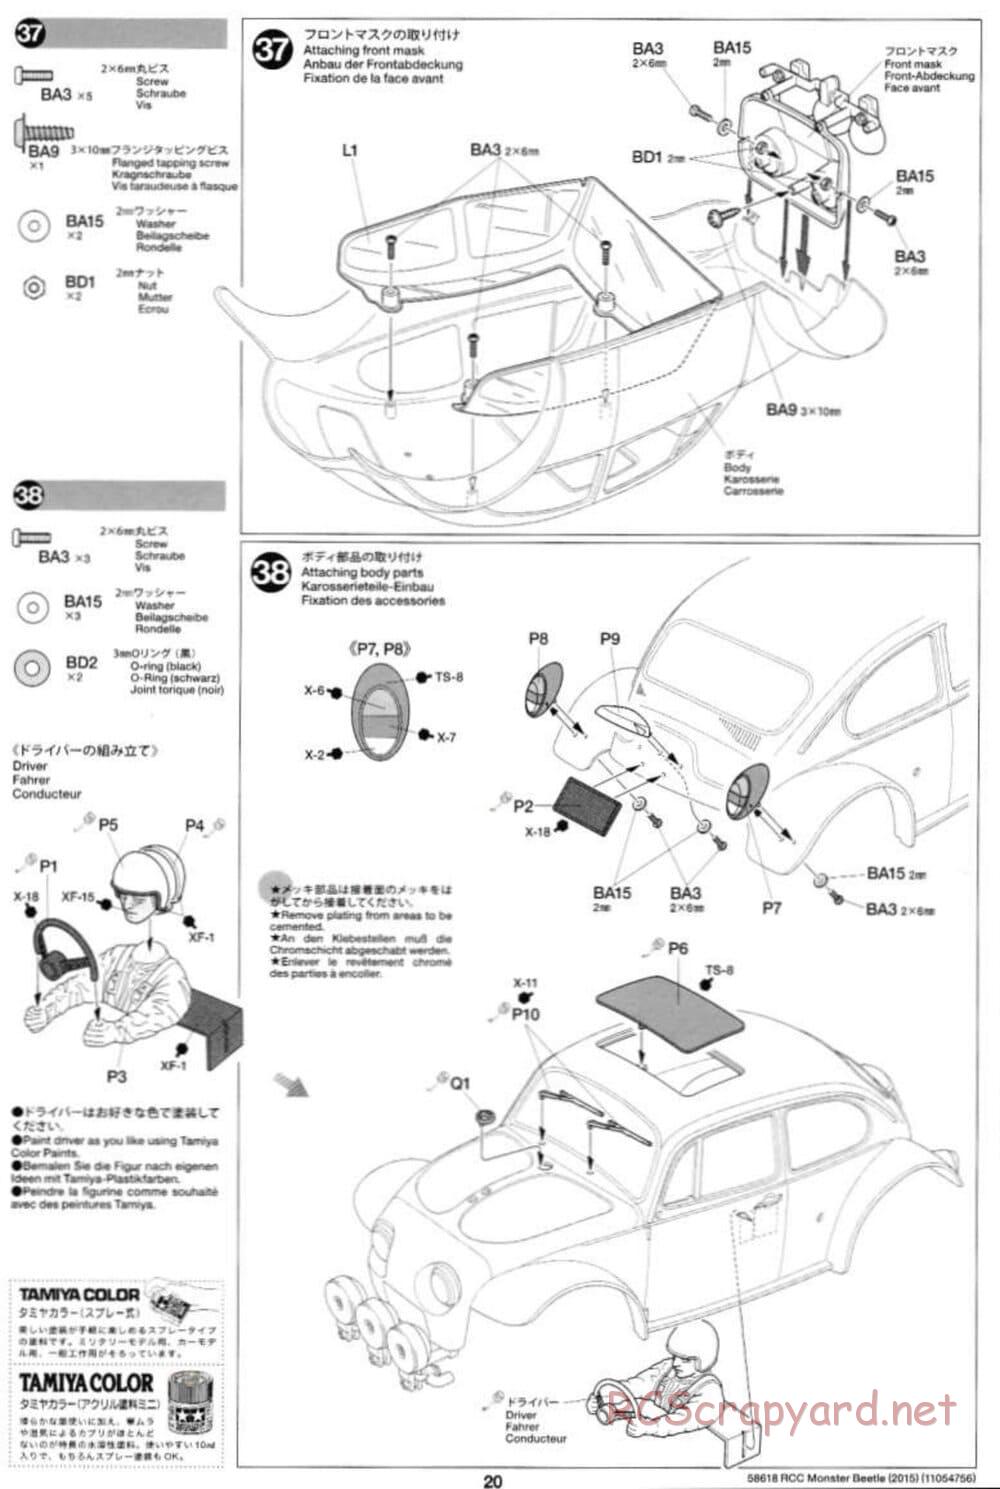 Tamiya - Monster Beetle 2015 - ORV Chassis - Manual - Page 20